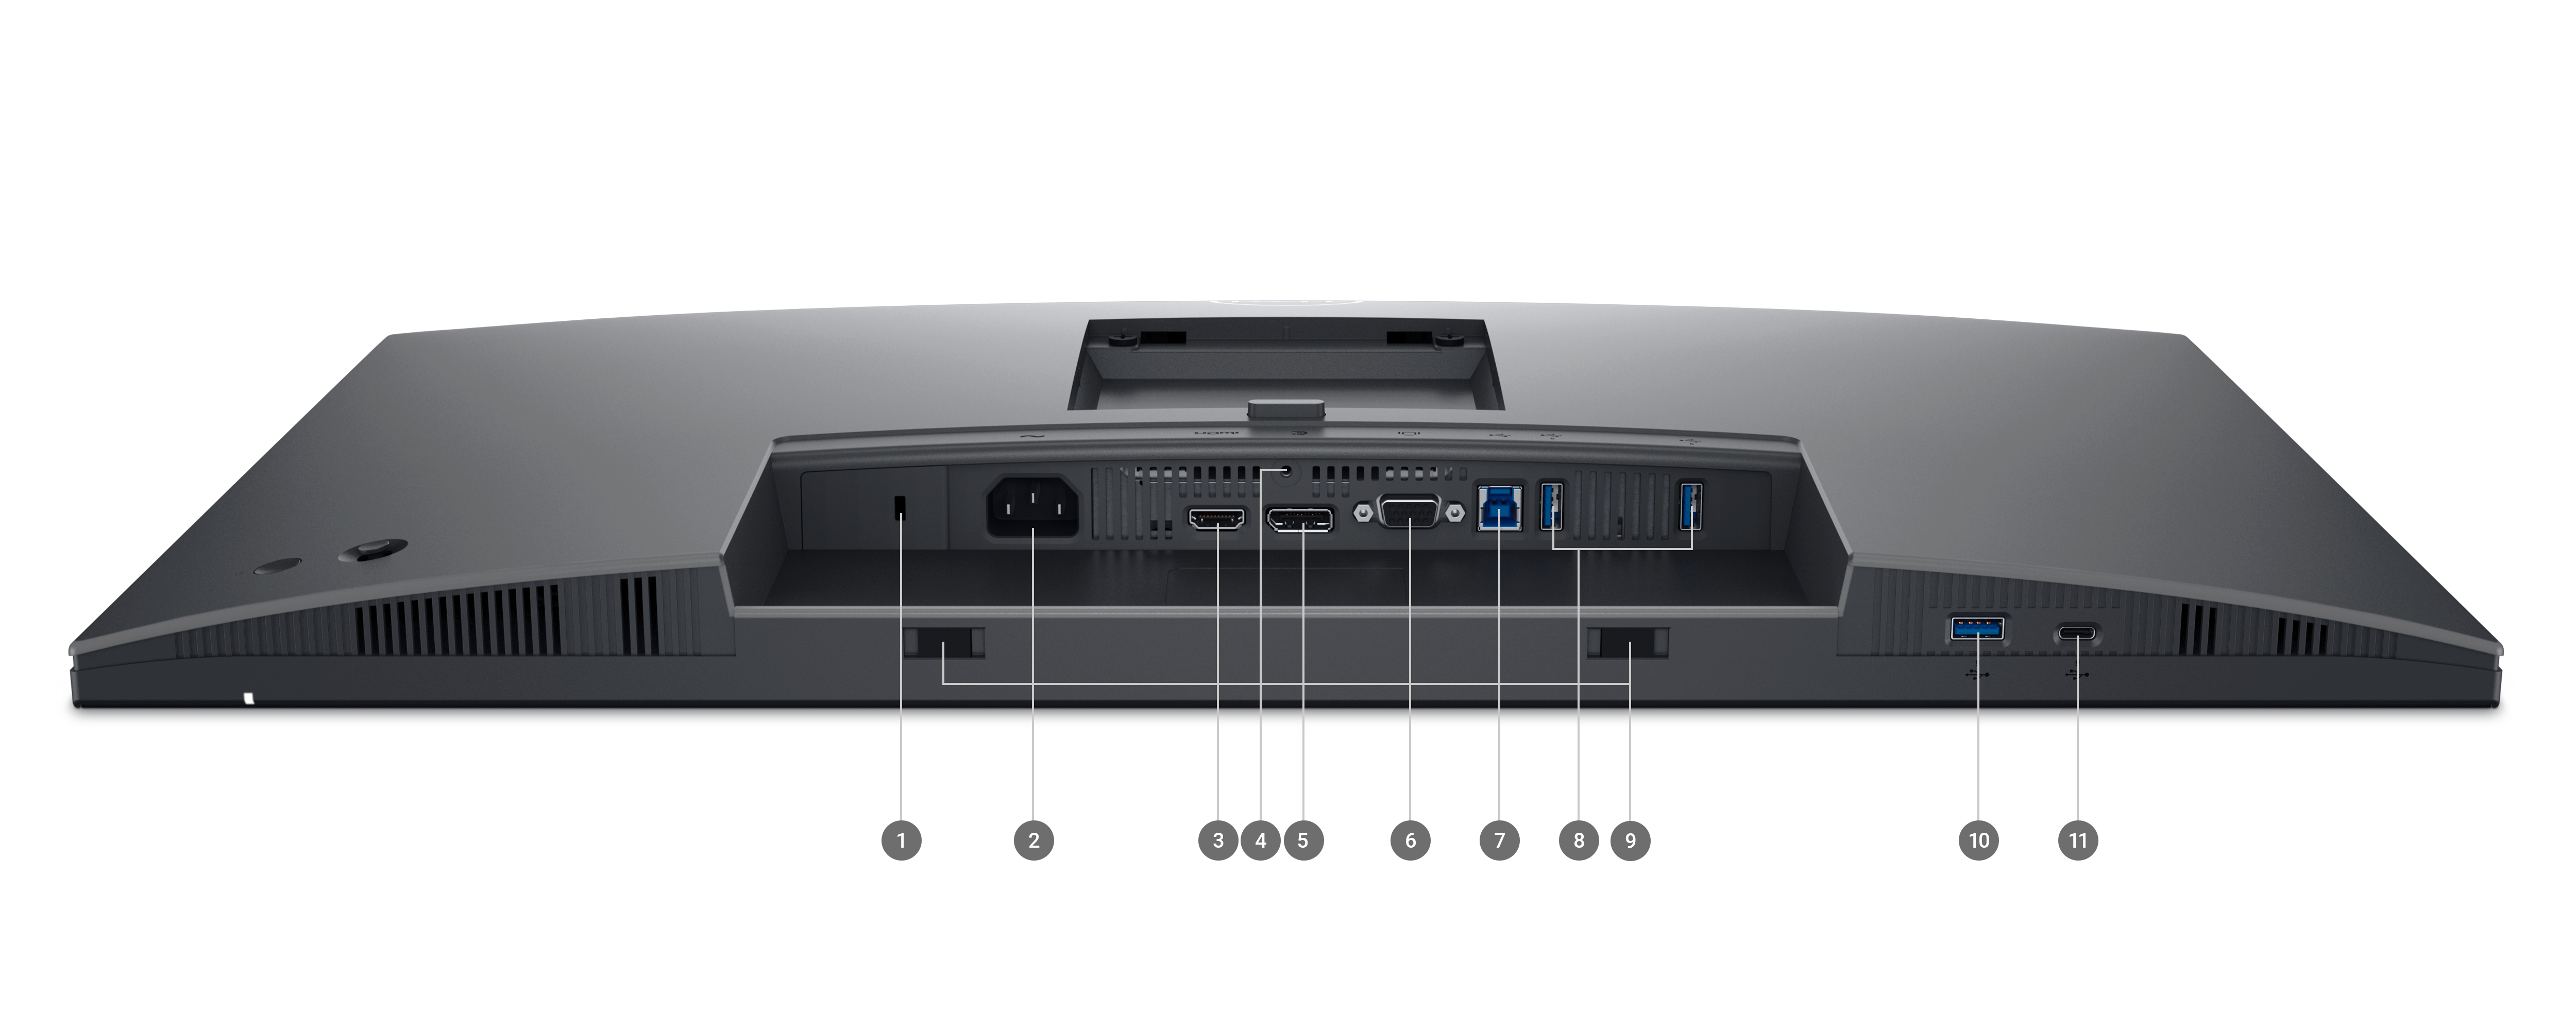 Monitor Dell UltraSharp 2725H con schermo rivolto verso il basso e numeri da 1 a 11 a indicare le porte e gli slot disponibili del prodotto.